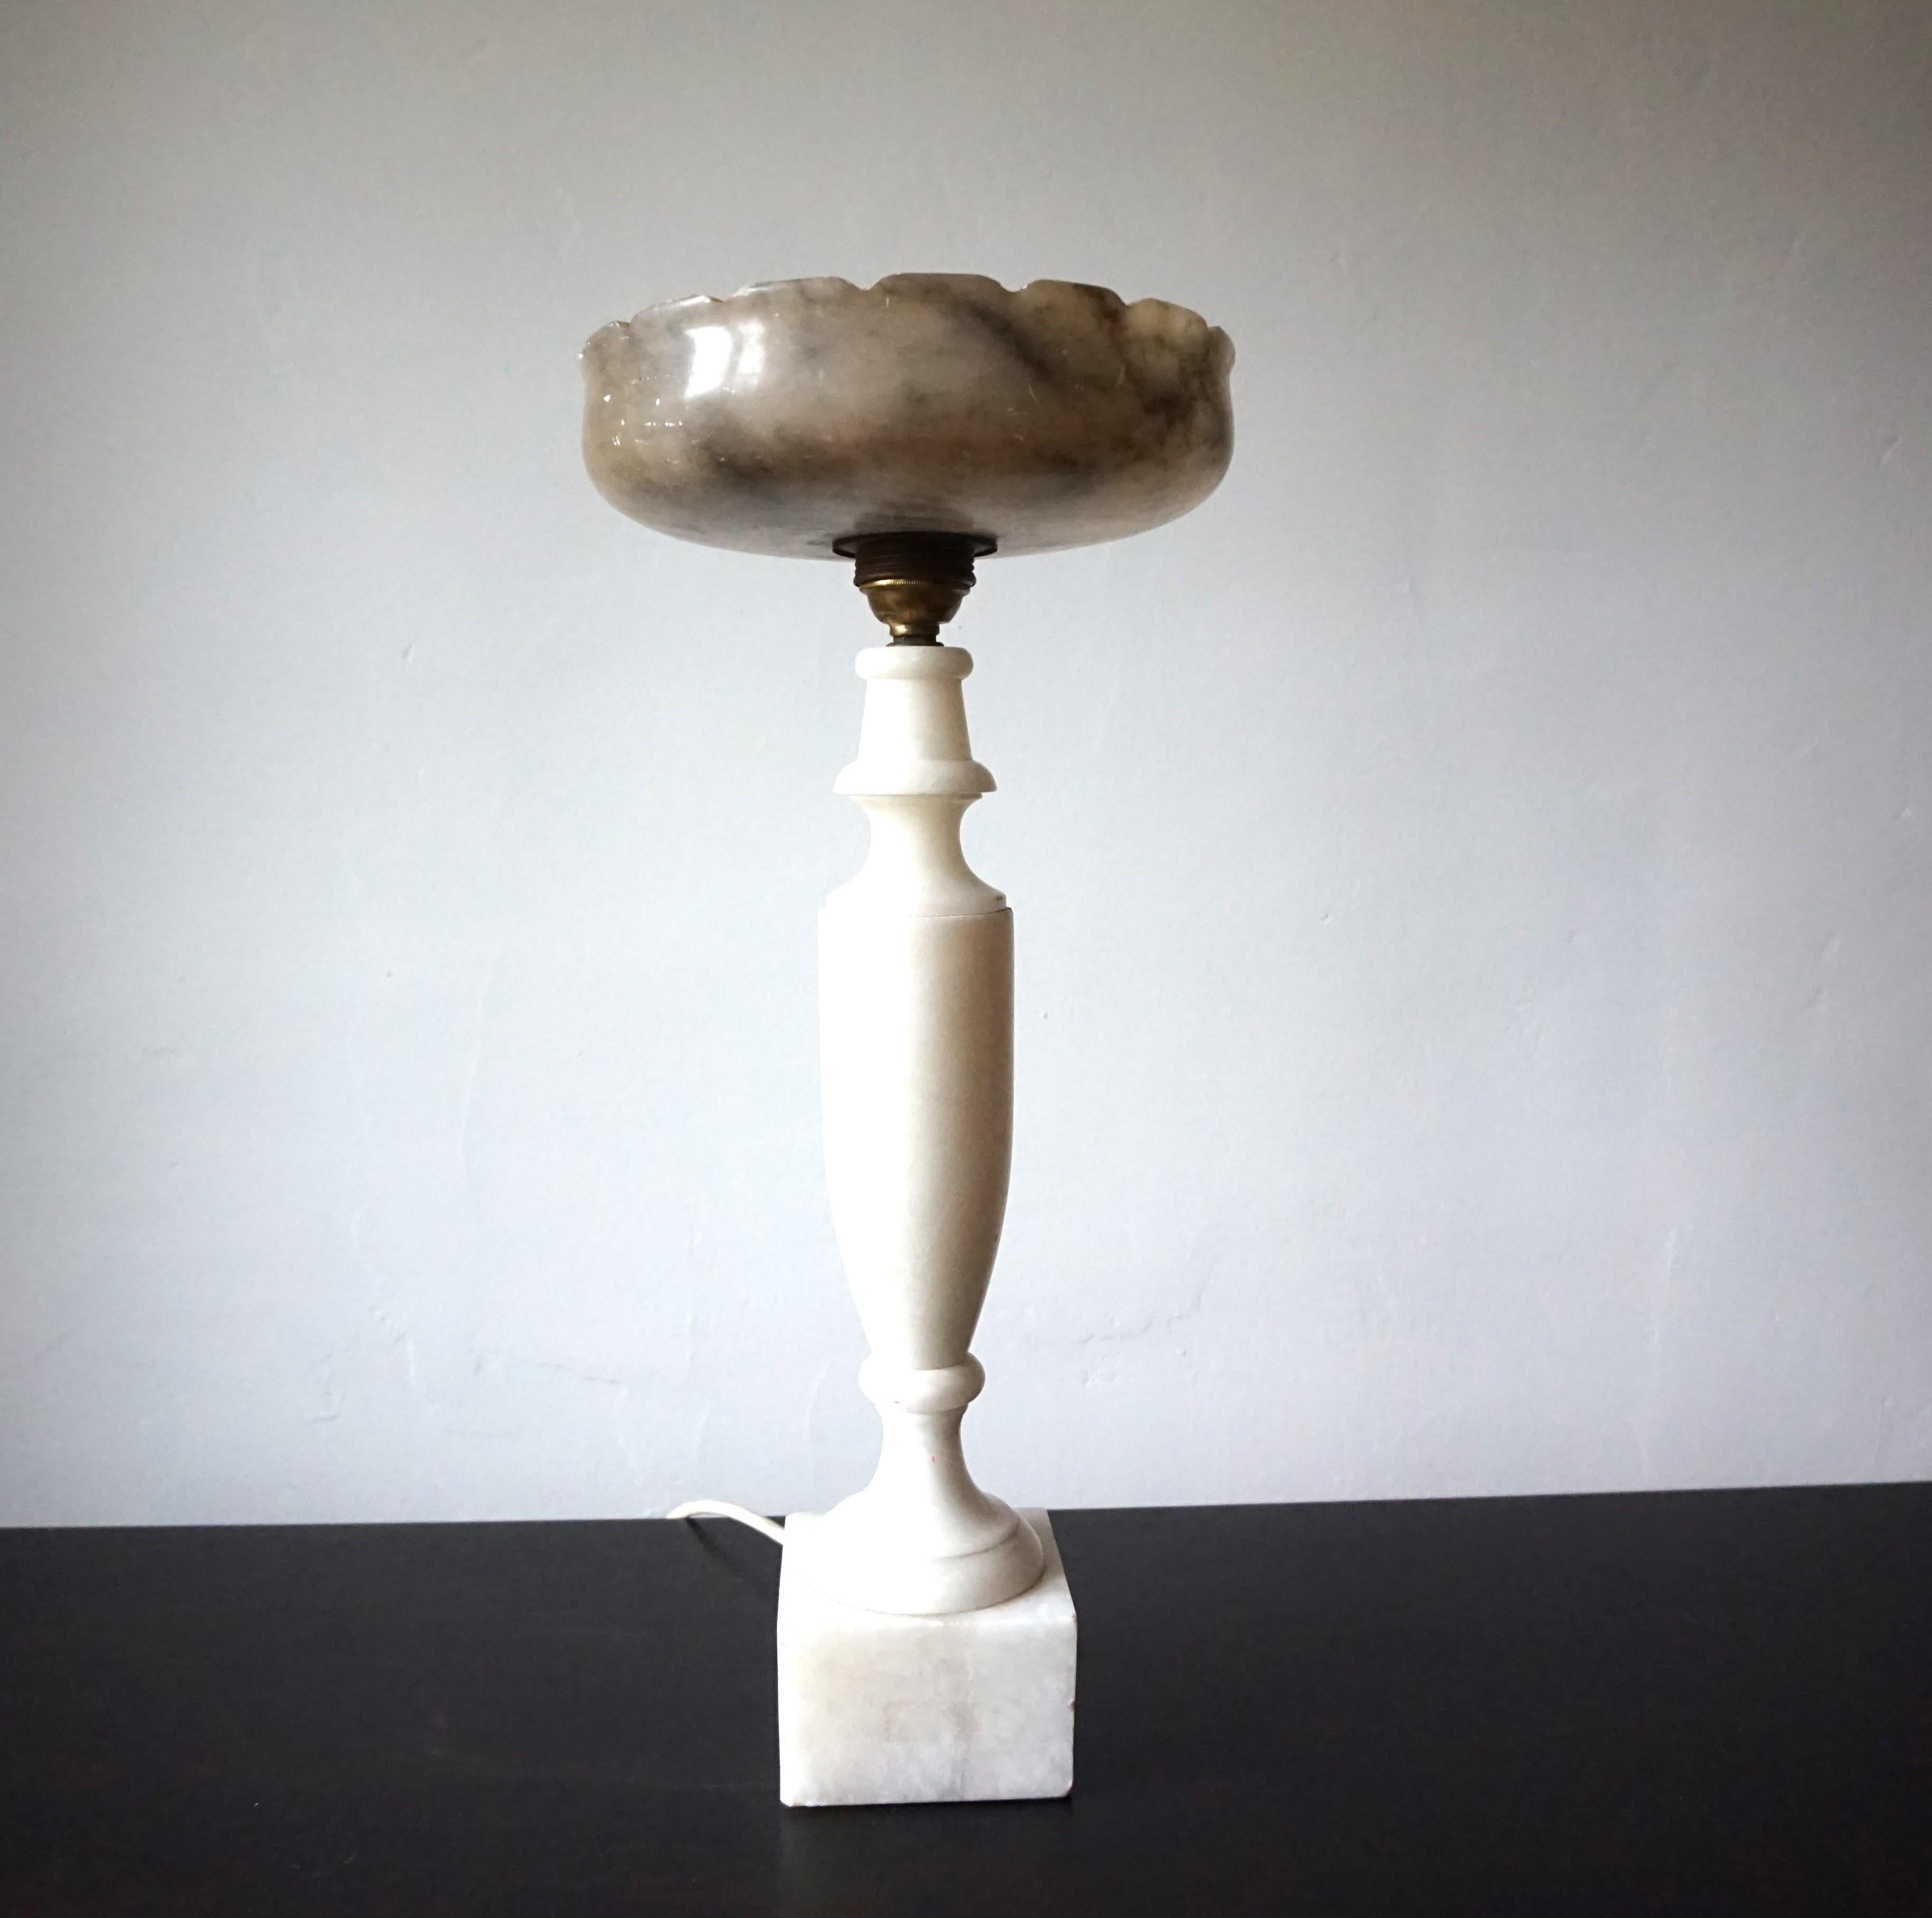 Cette extraordinaire lampe de table avec une base en marbre en forme d'amphore étroite, reposant sur une base carrée et un bol en marbre, est en très bon état. Le marbre clair de la base s'harmonise parfaitement avec la tête de la lampe, qui